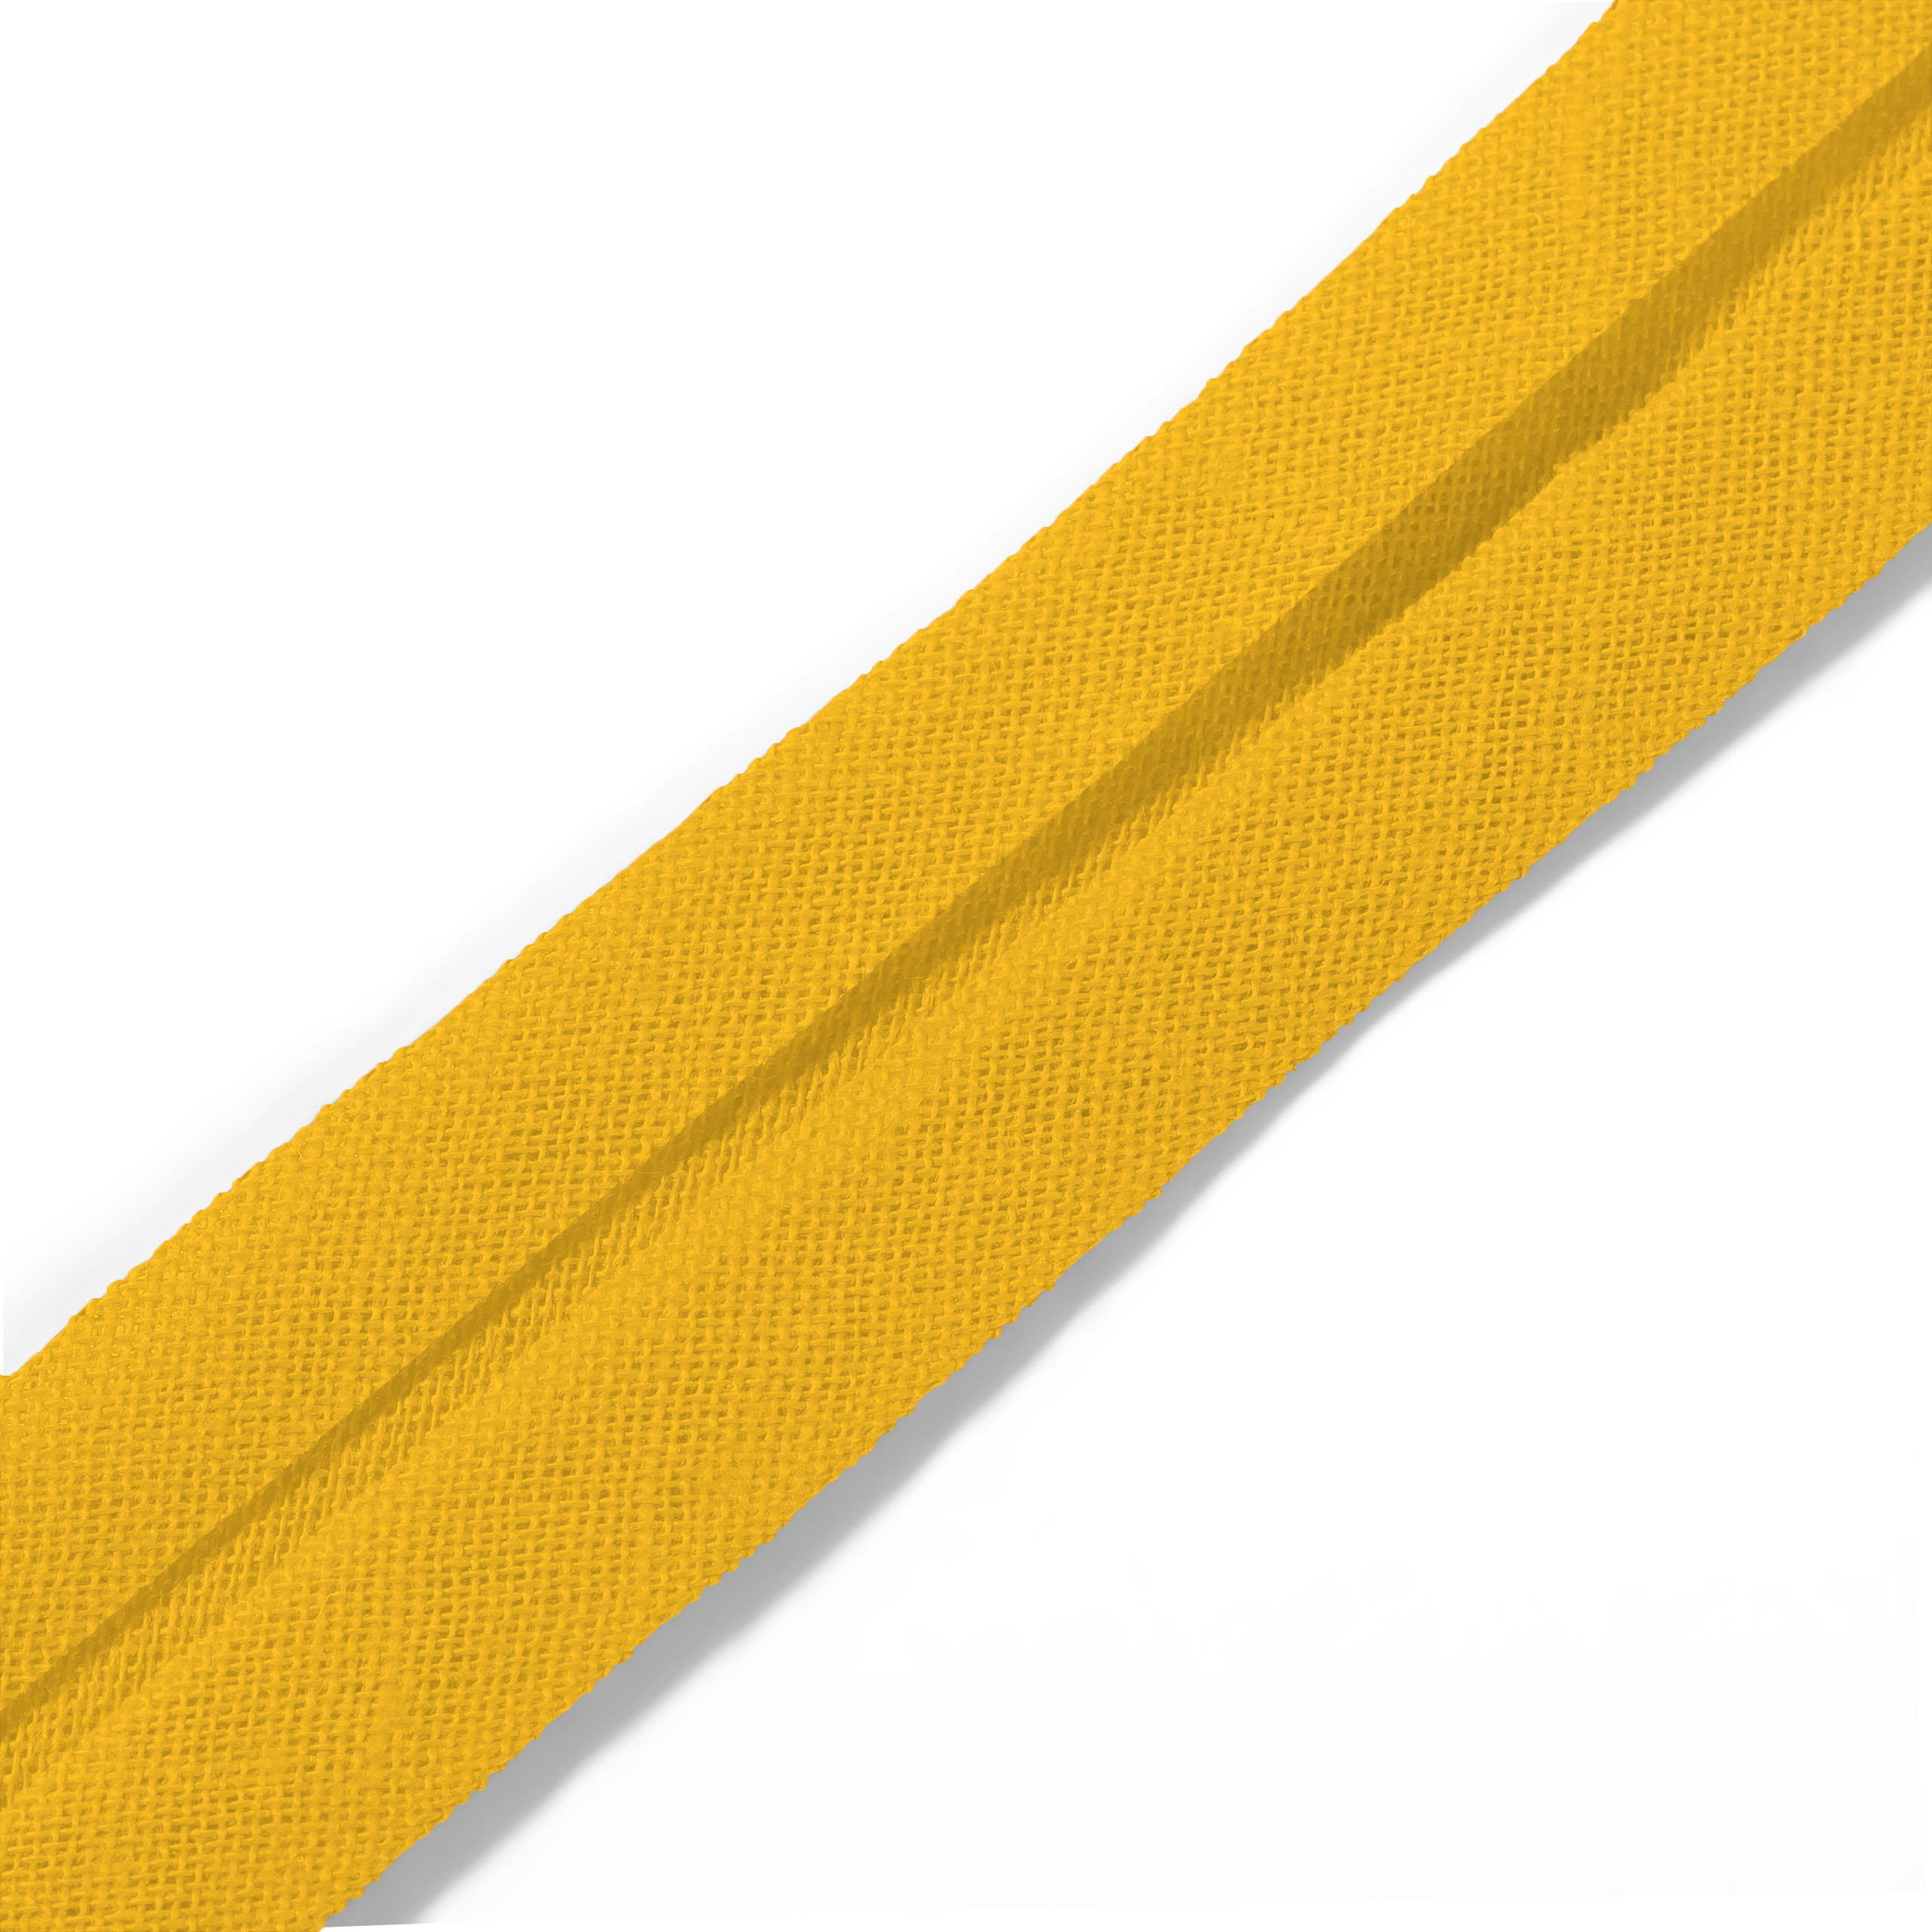 Schrägband 40/20 mm gelb, Meterware, Baumwolle, Prym, Einfassband